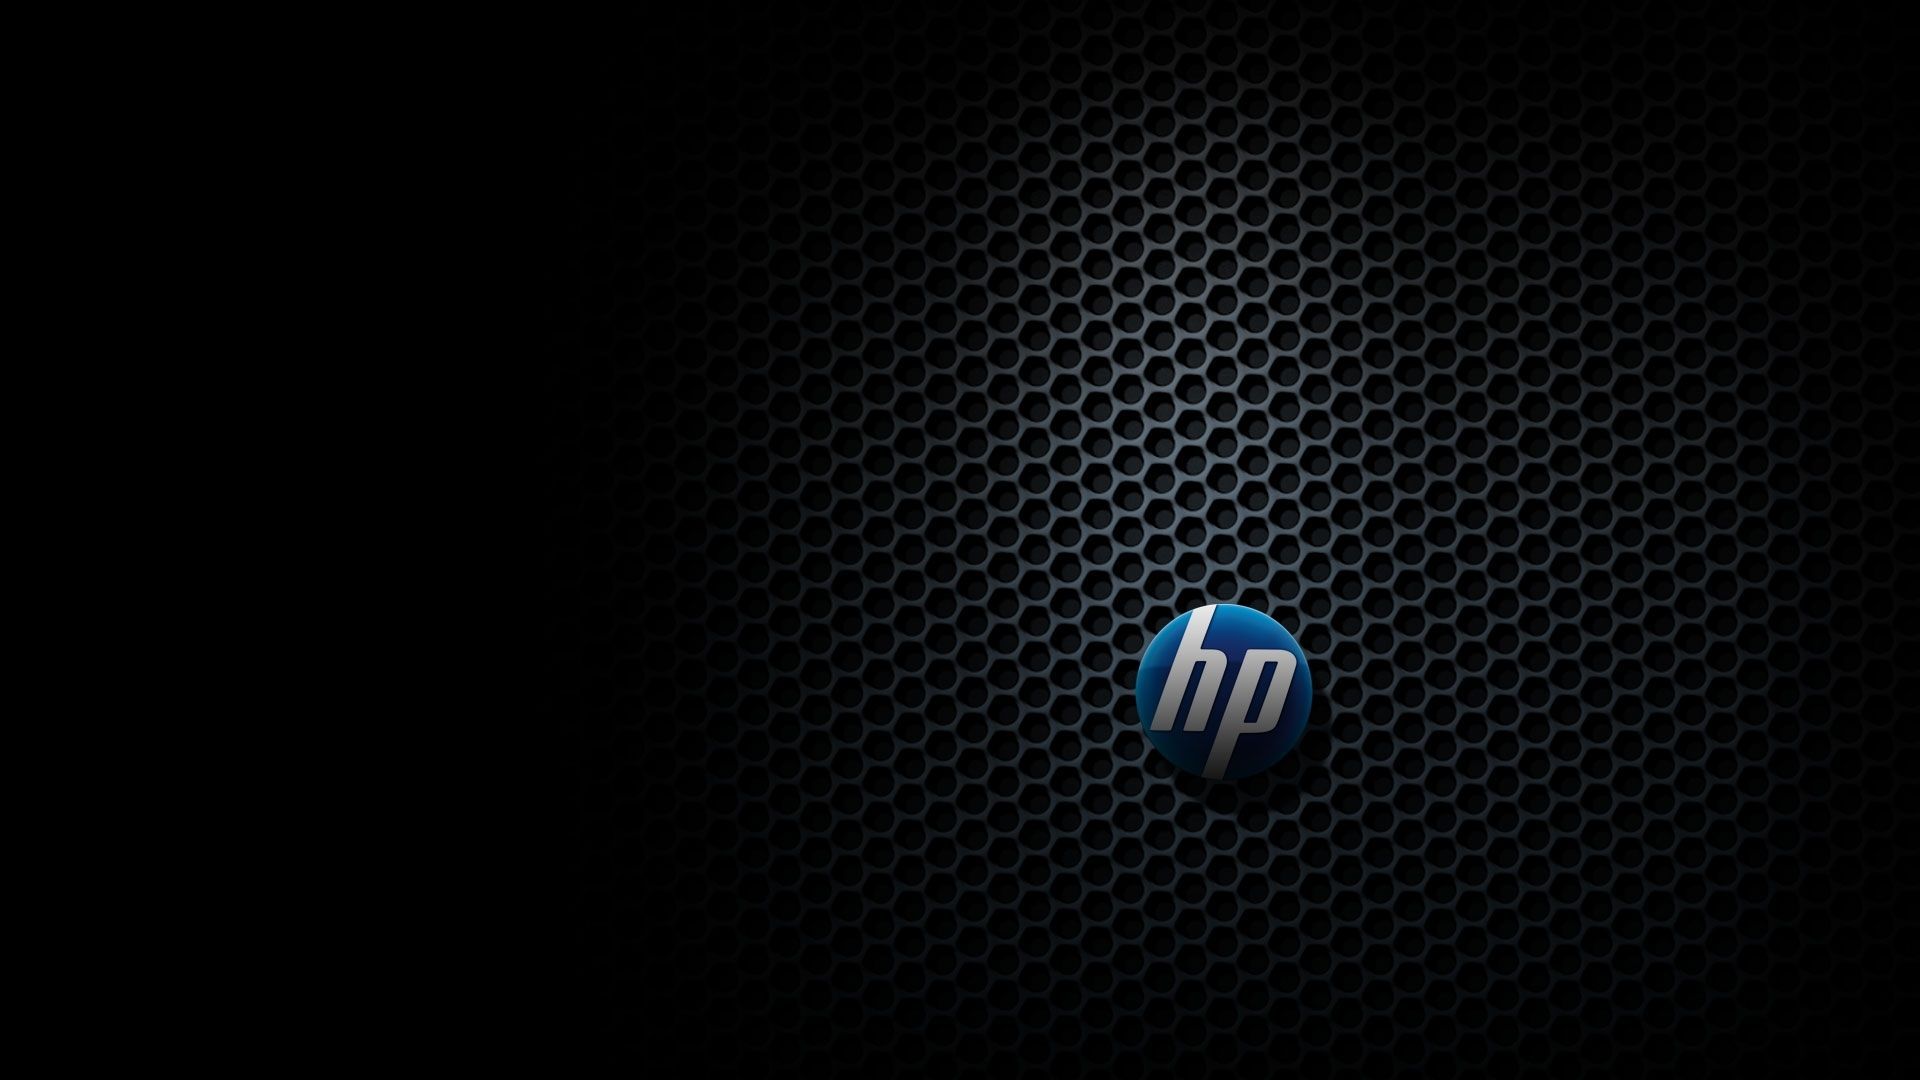 Top Hewlett Packard HD Wallpaper FULL HD 1080p For PC Background. HD wallpaper for laptop, Laptop wallpaper, HD wallpaper desktop